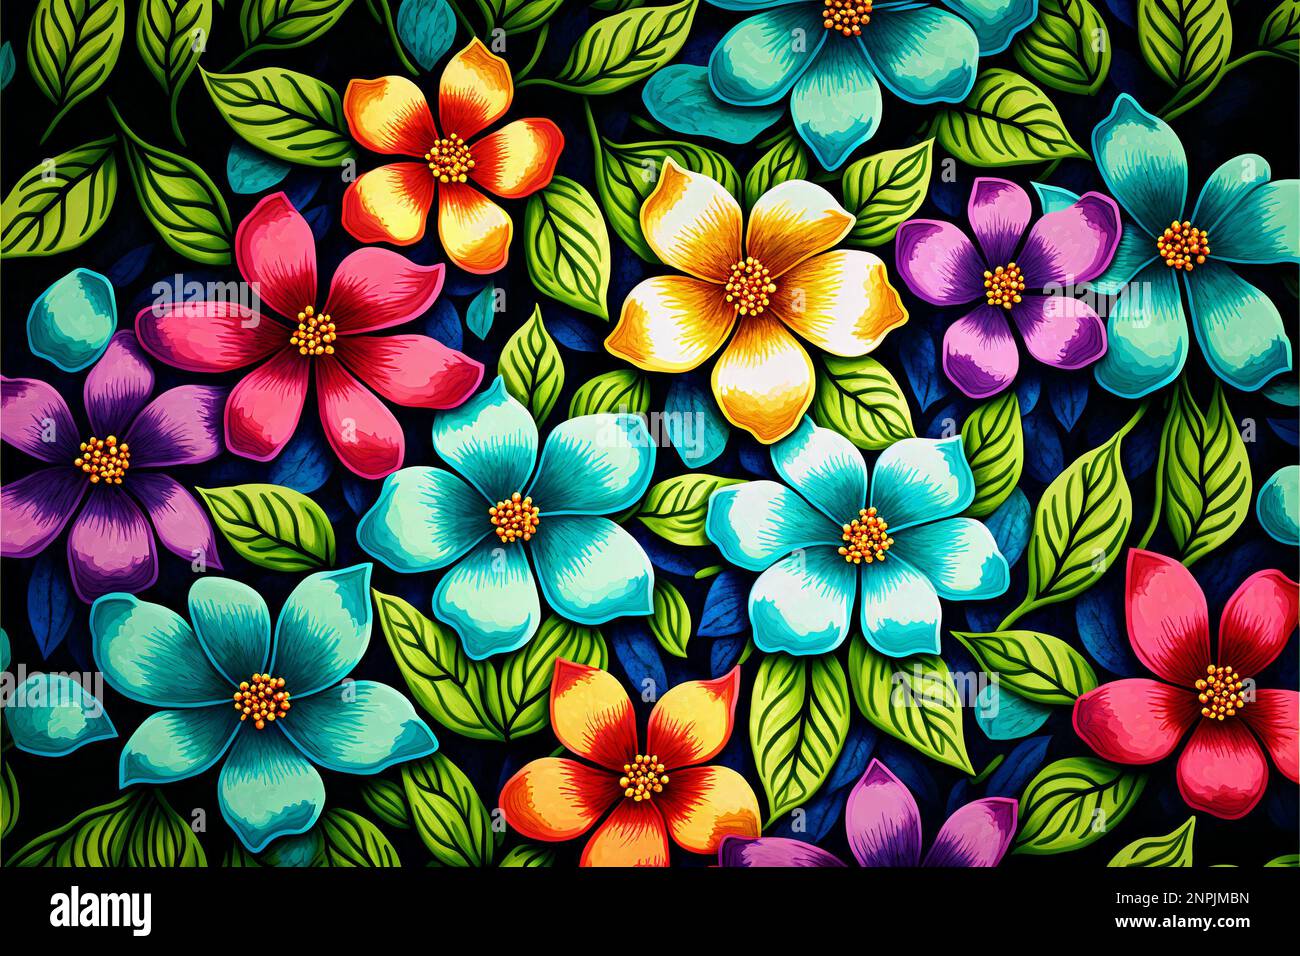 Fondo De Pantalla Colorido Y Abstracto De Flores De Papel Stock de